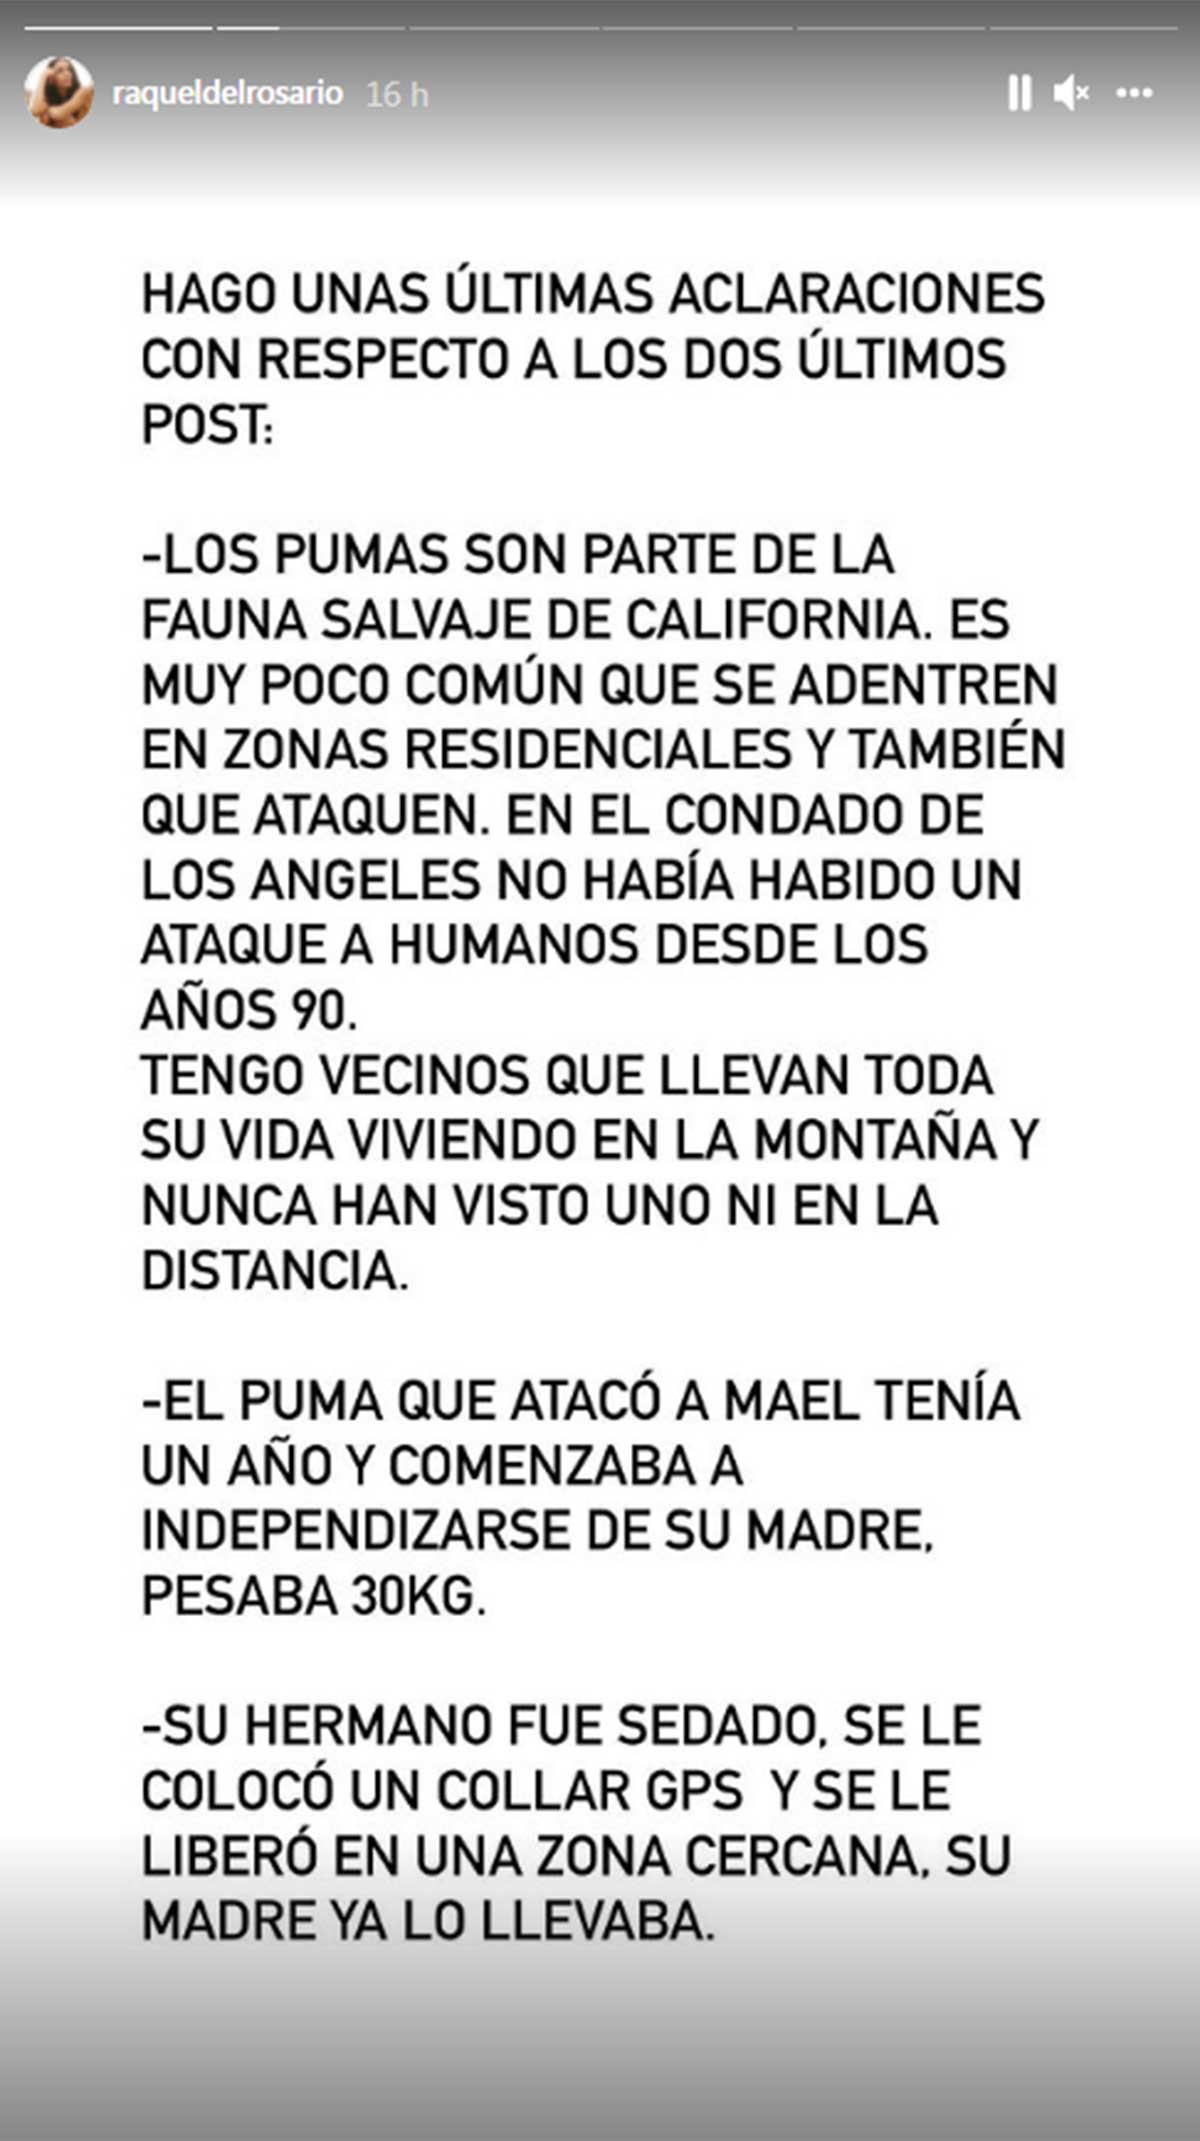 Raquel del Rosario aclara detalles del ataque de puma a su hijo que han provocado controversia